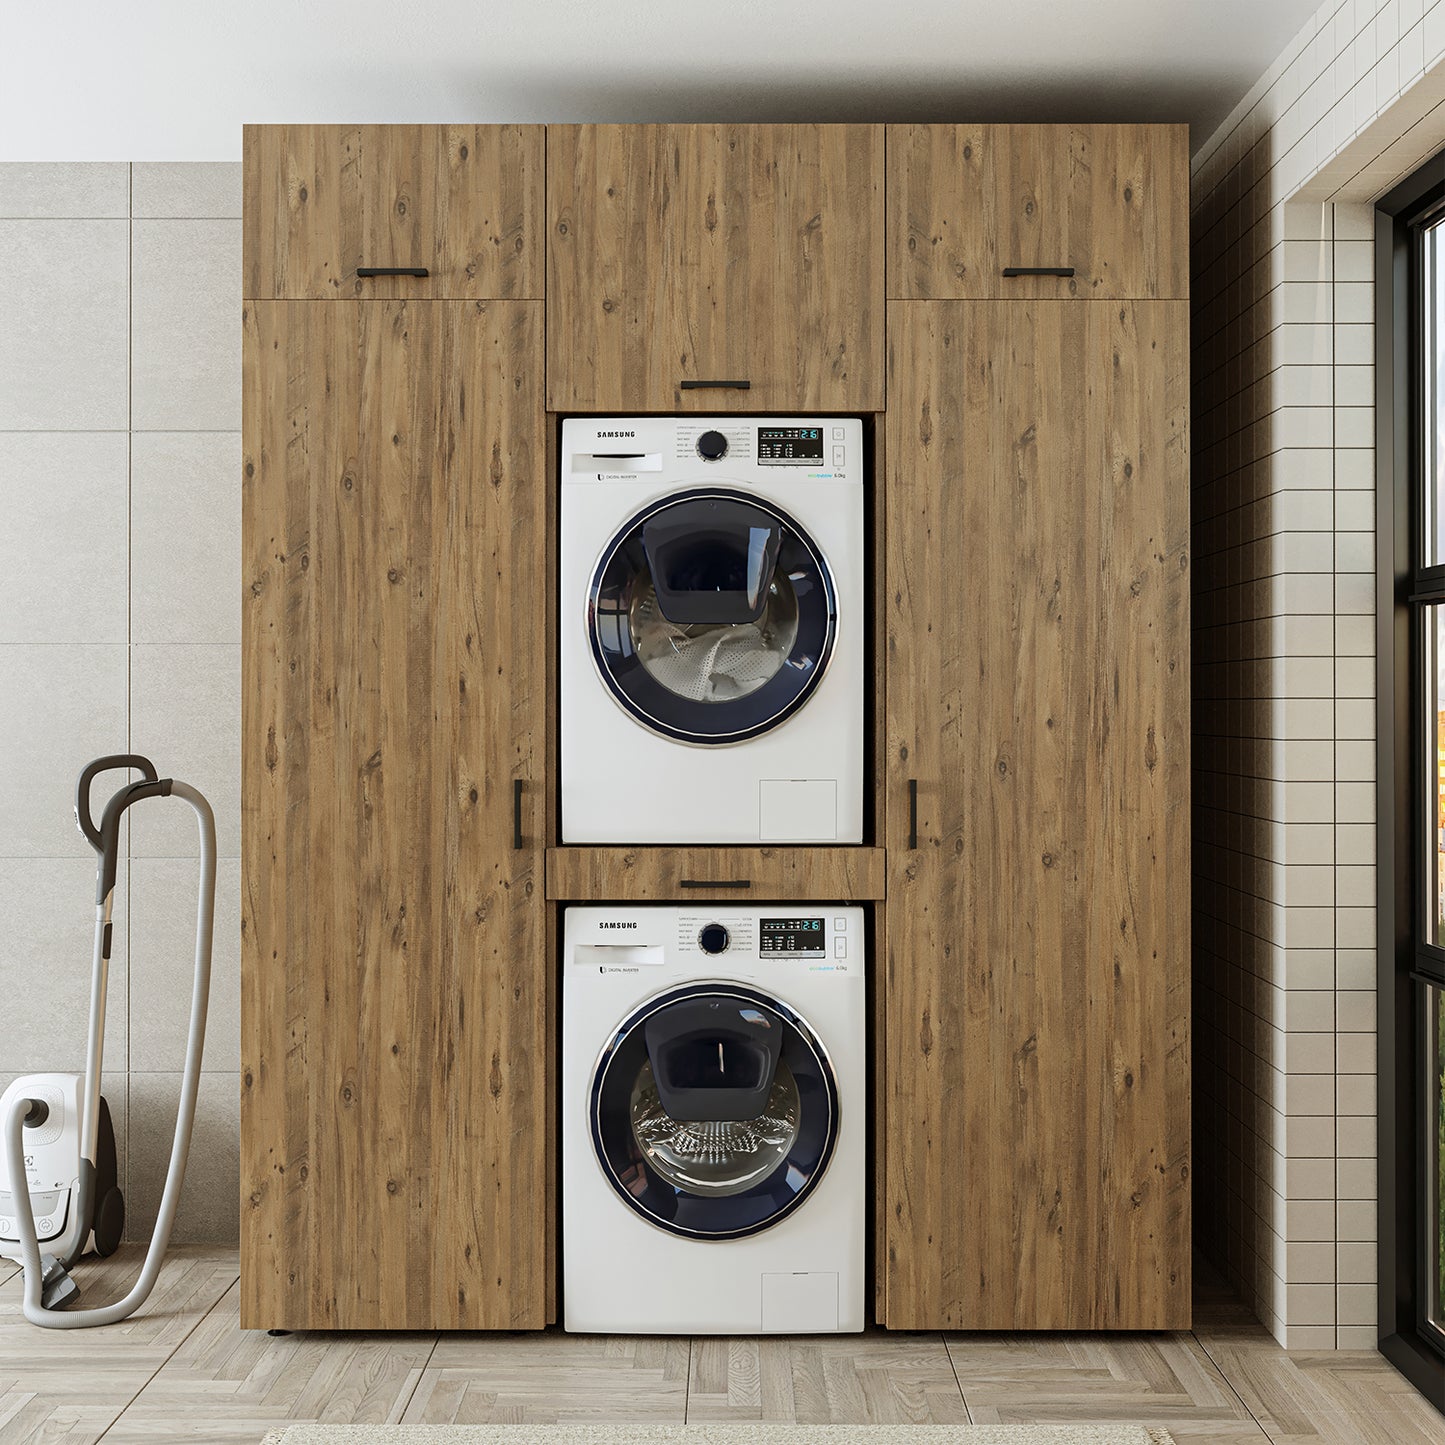 Roomart Schrankwand Trockner auf Waschmaschine • 187 cm breit • Weiß, Schwarz Eiche Waschmaschinenschrank